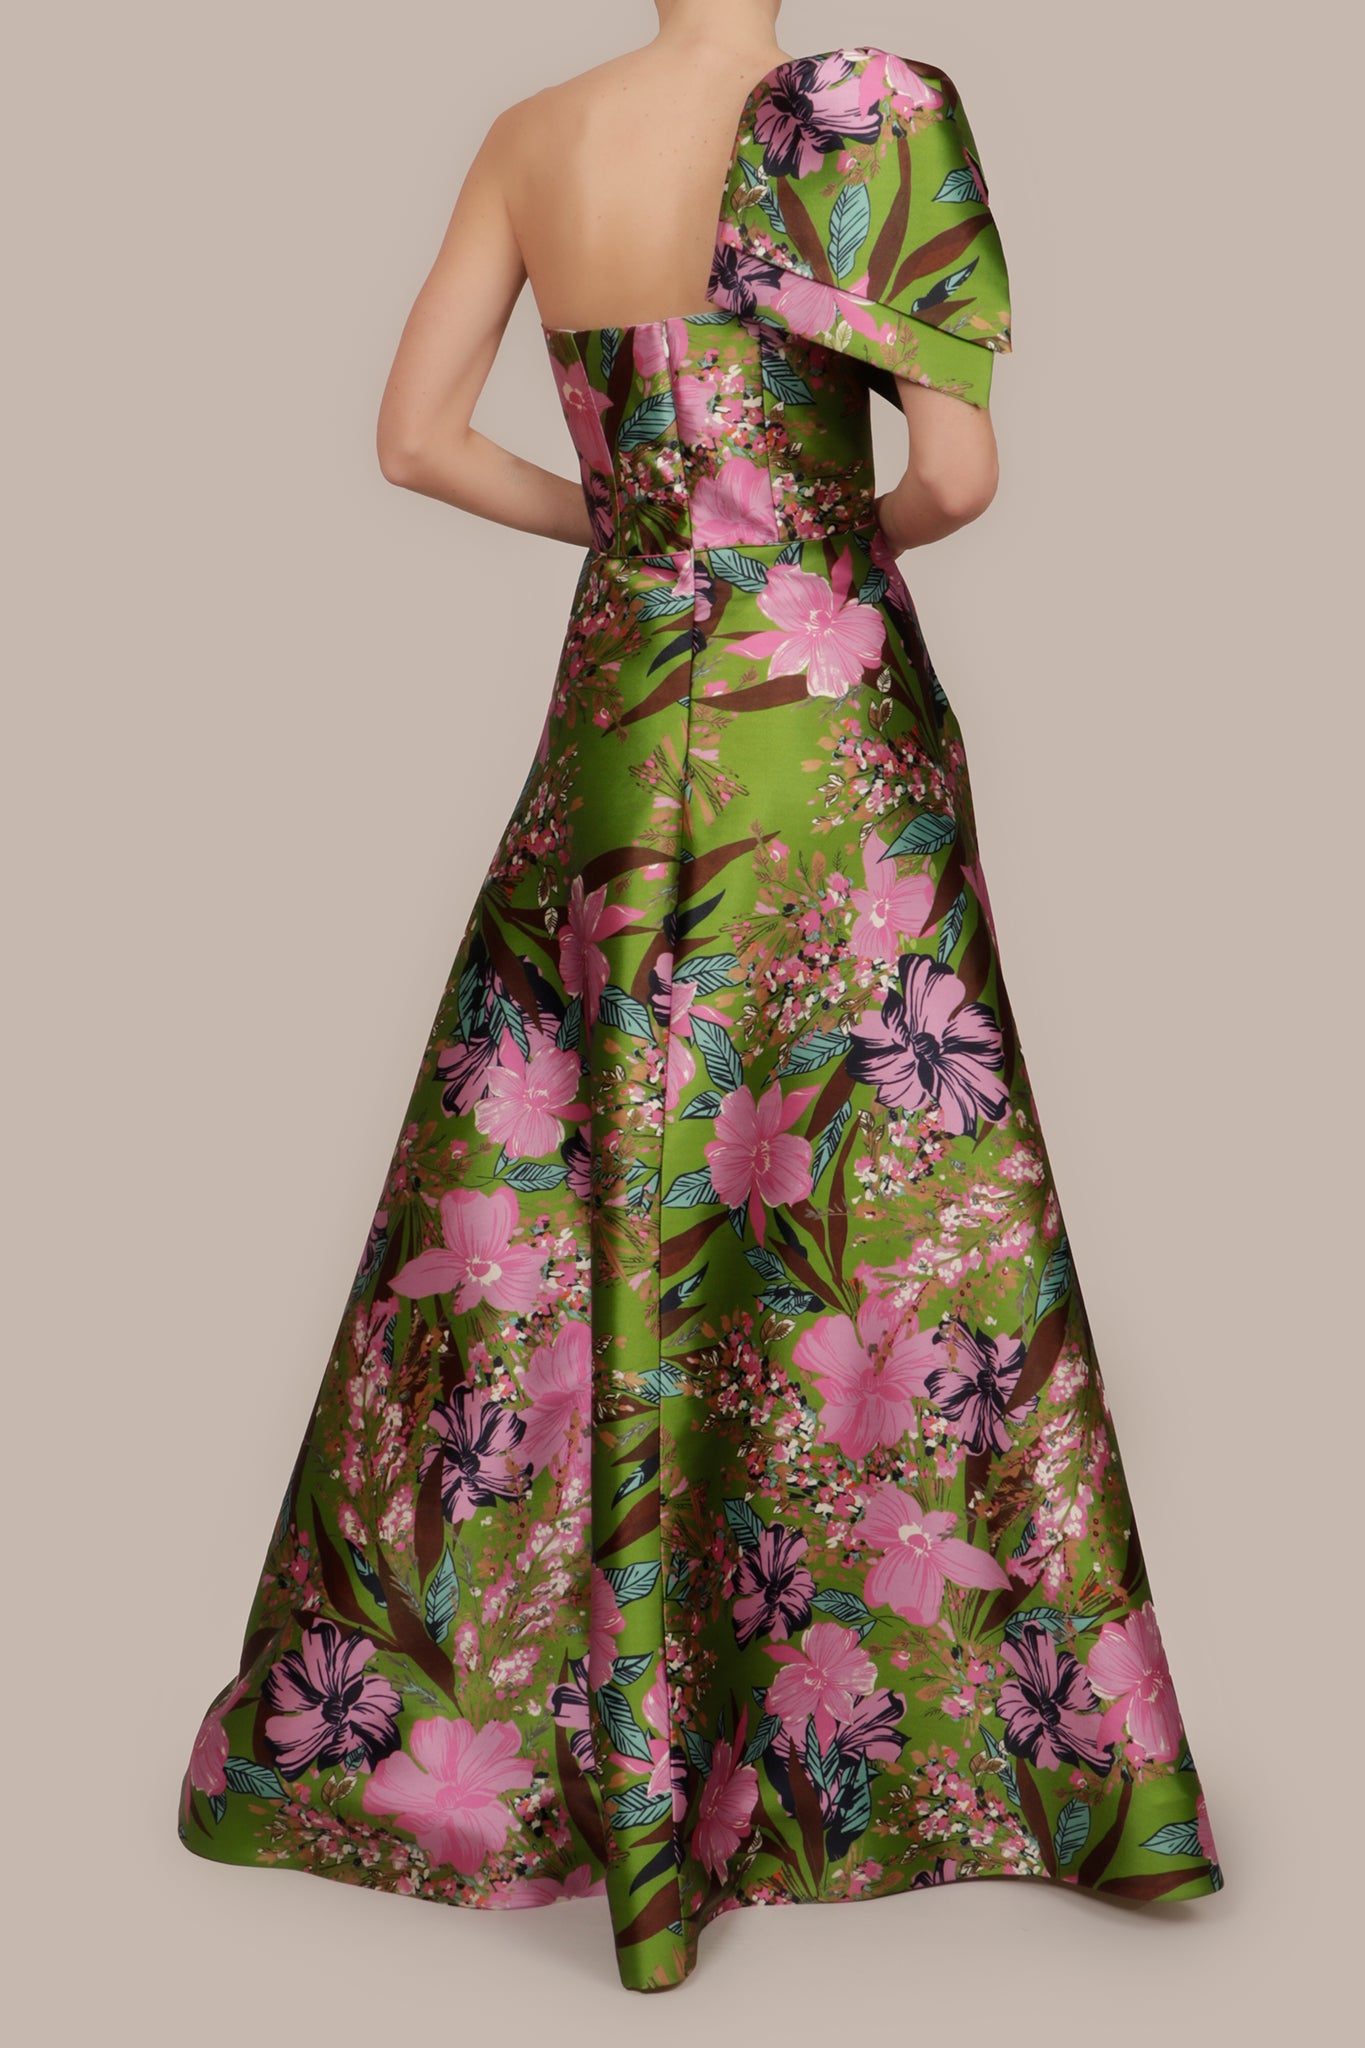 Vestido doble moño en hombro verde flores lilas